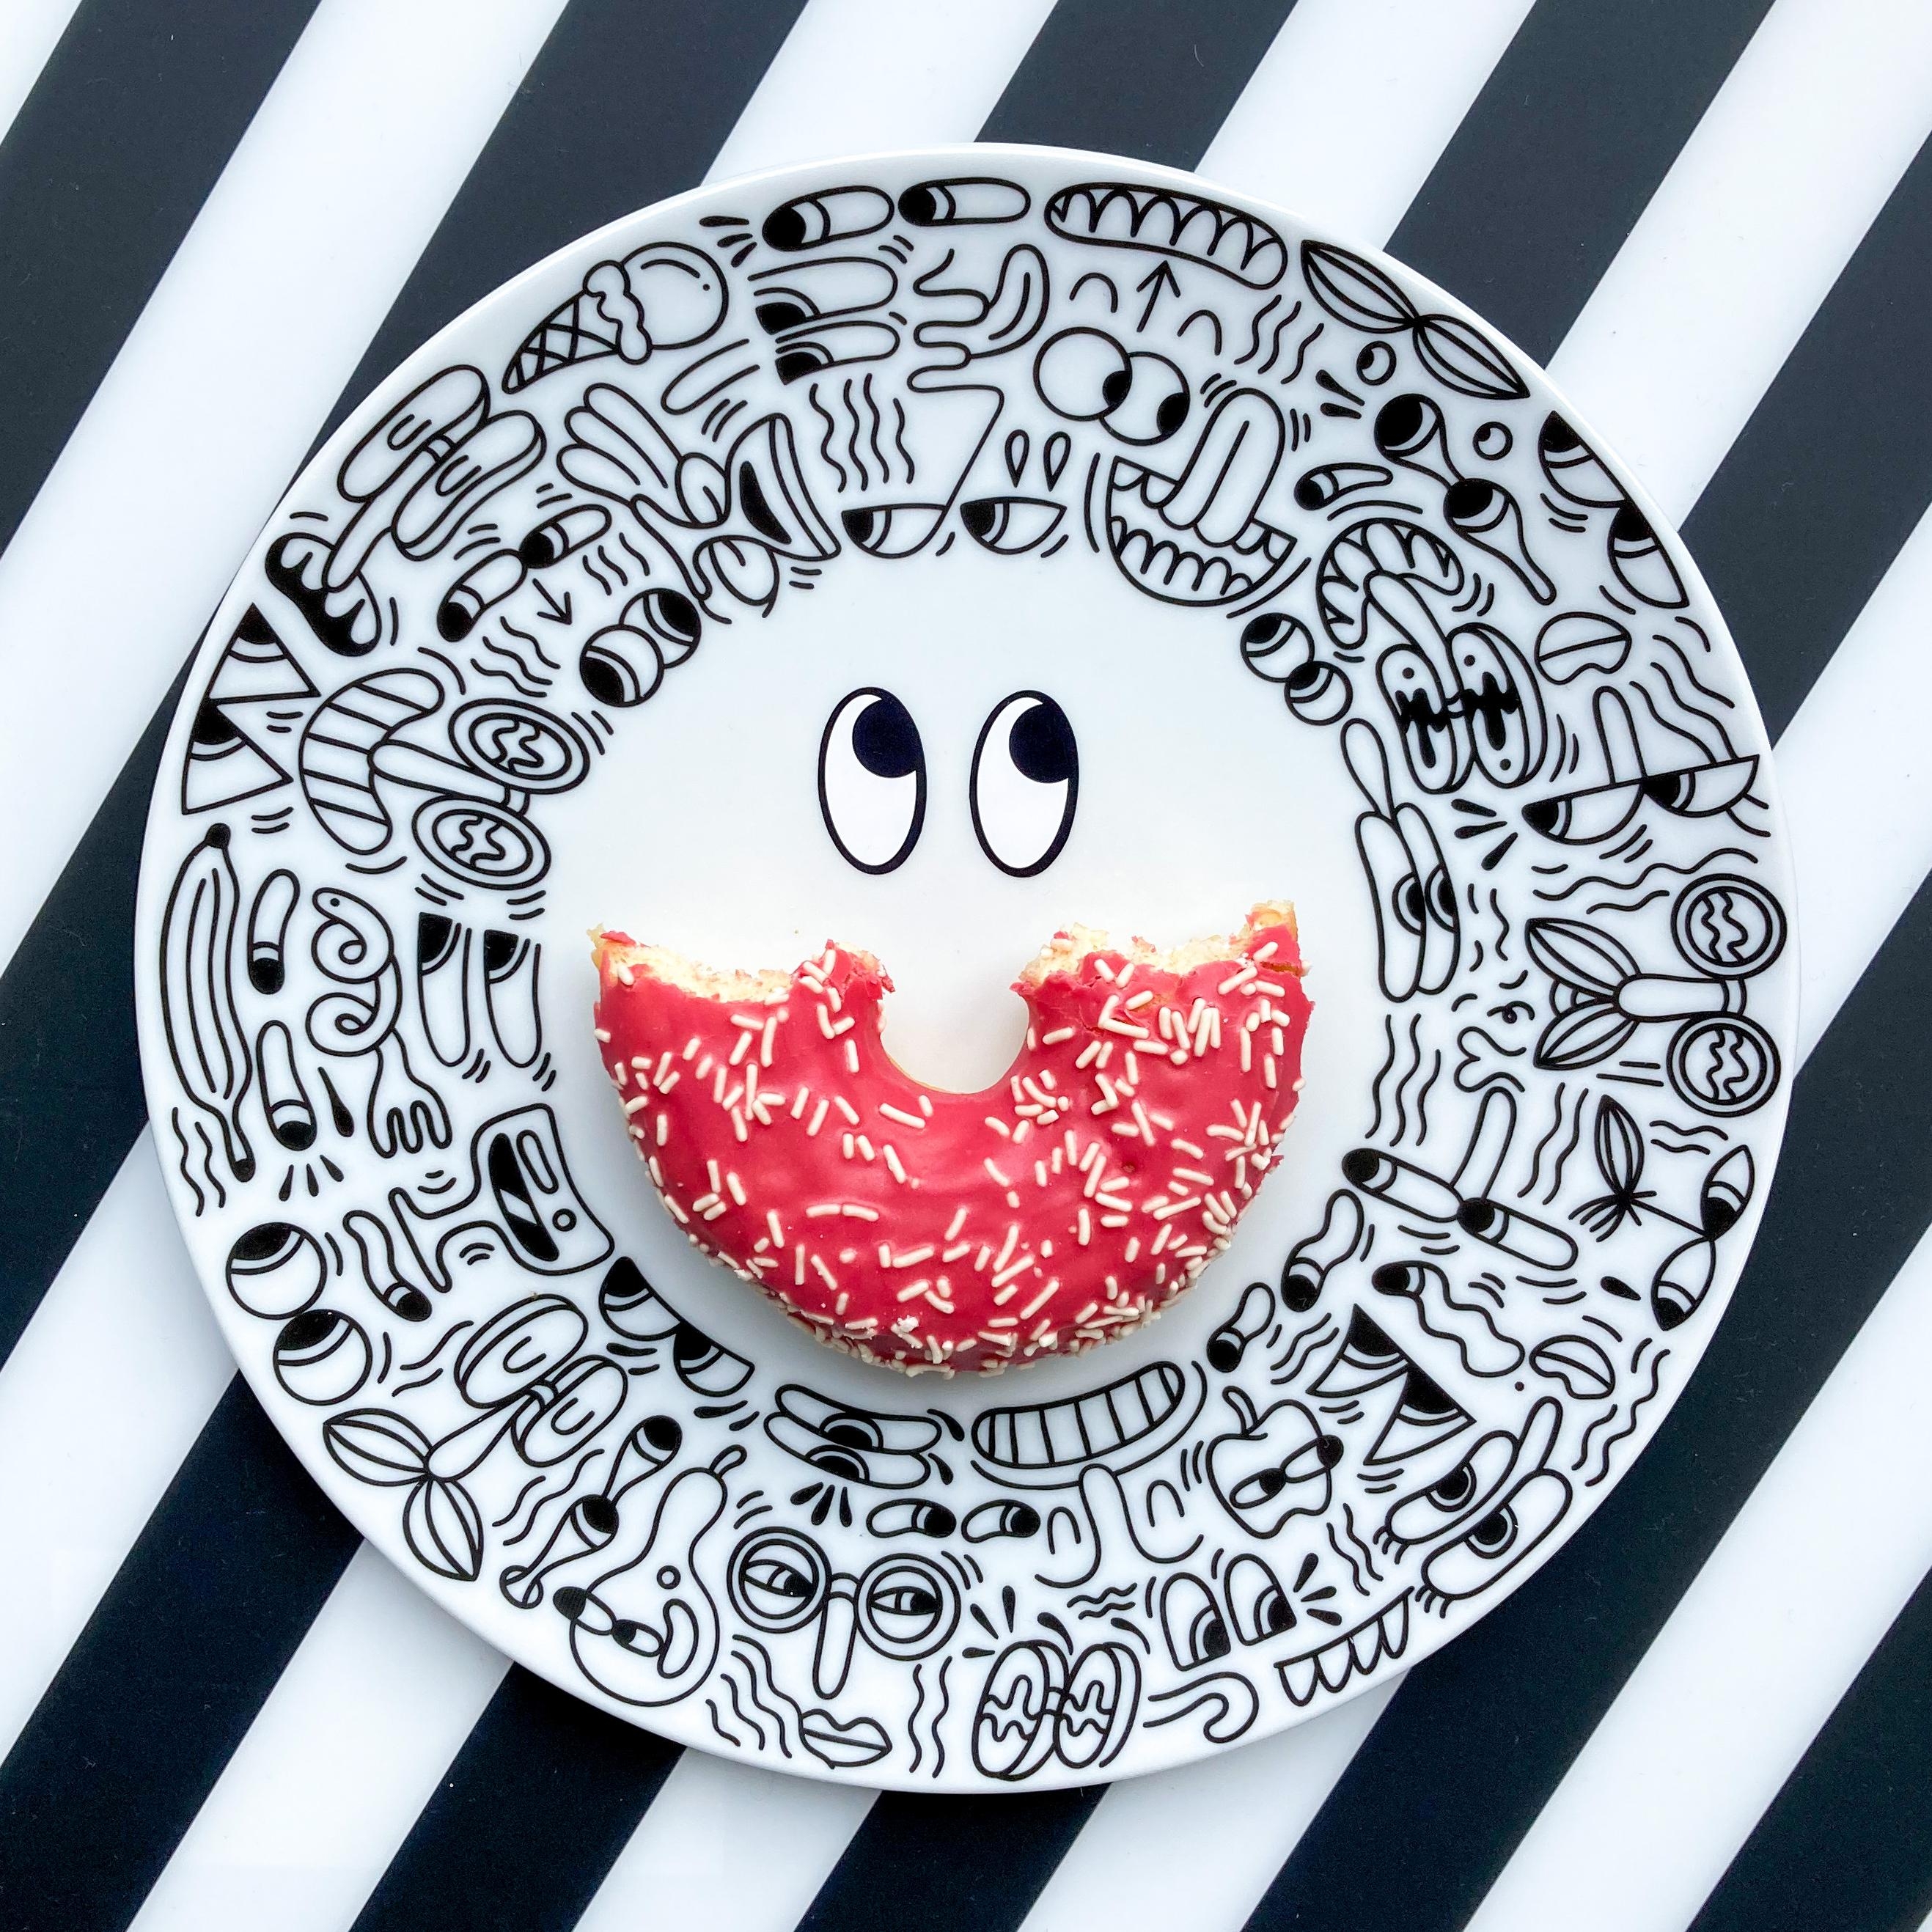 Smile. #frühstück #donut #blackandwhite #schwarzweiss